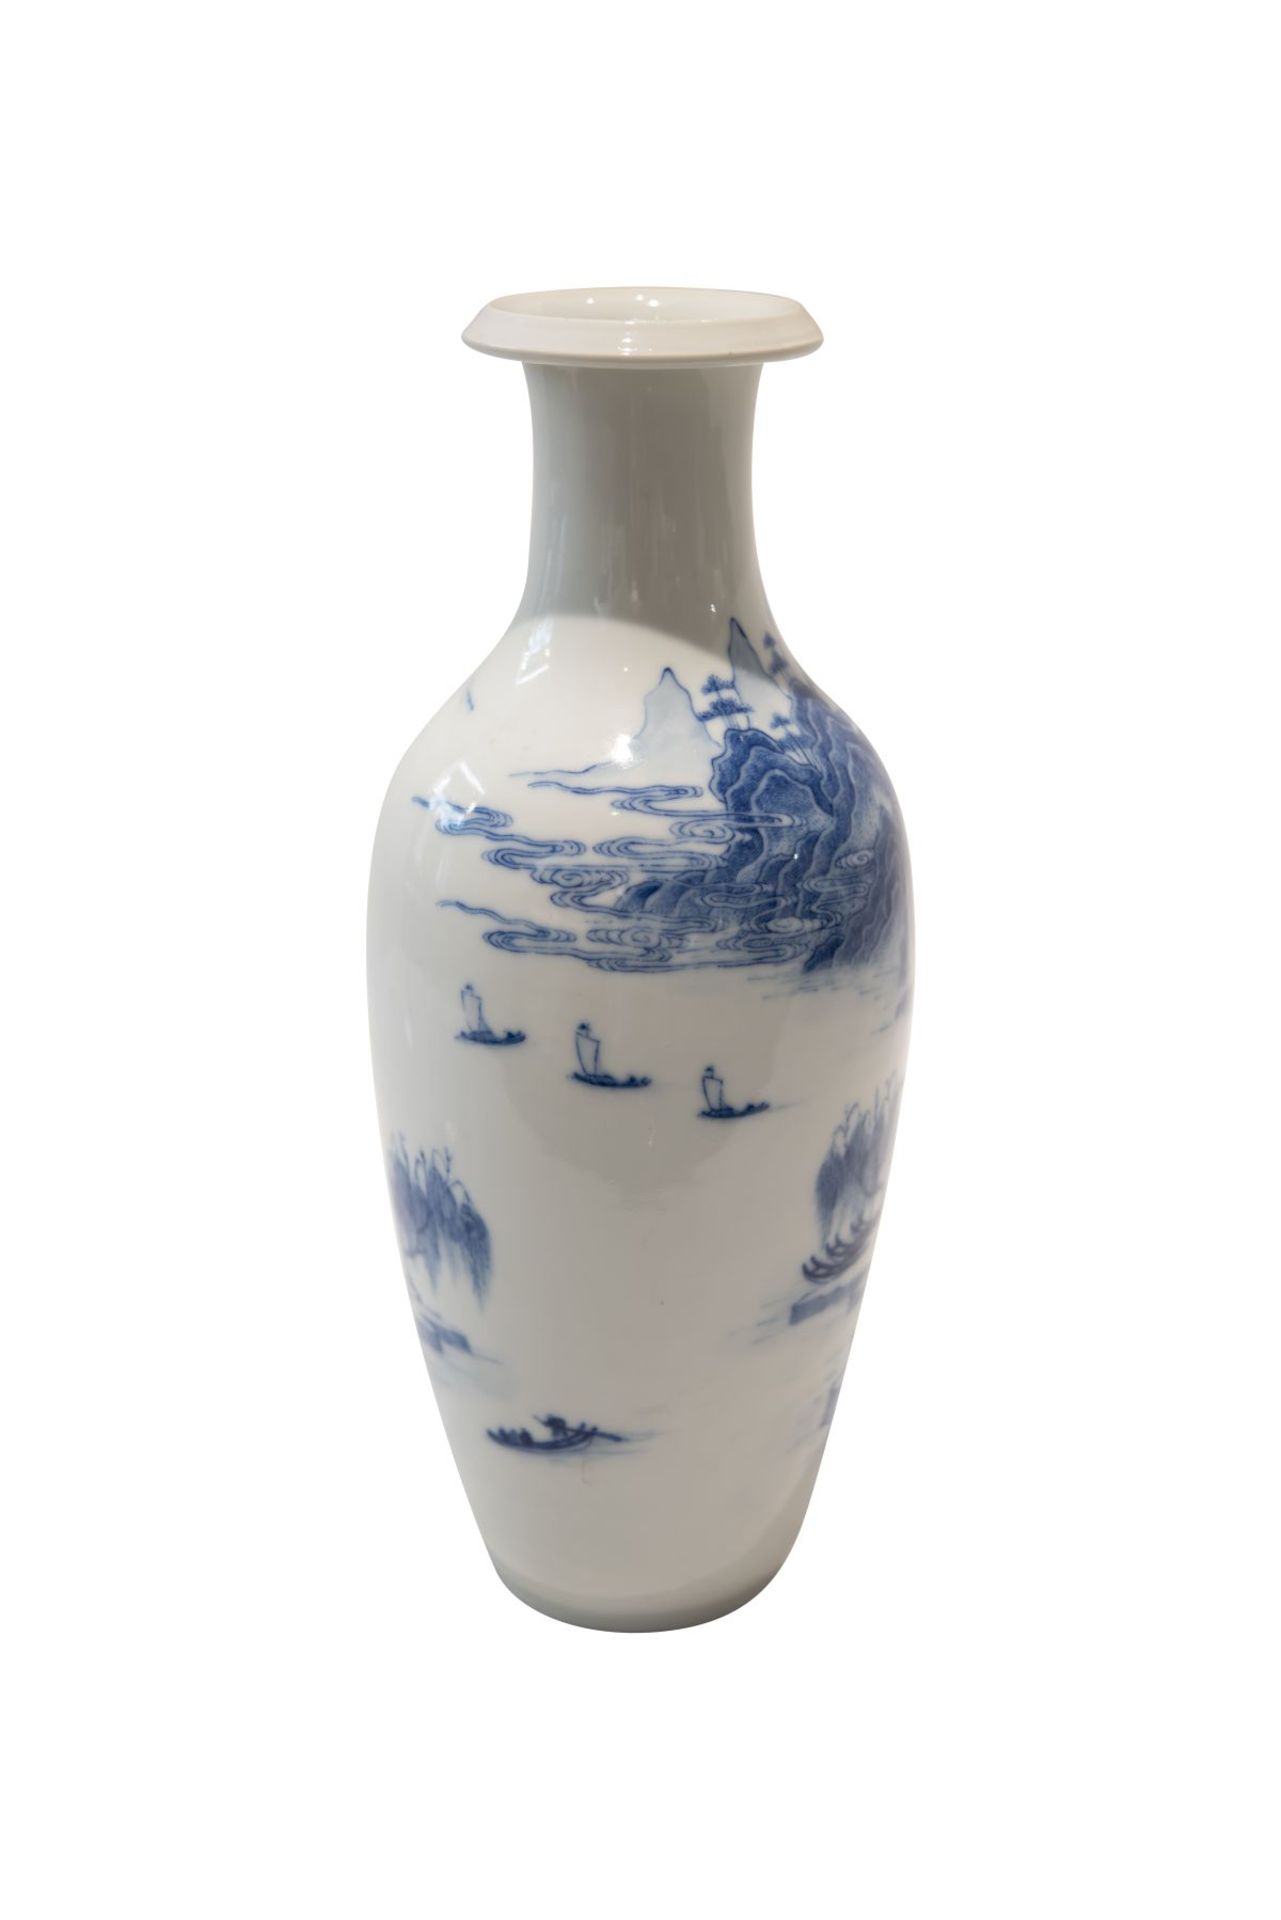 Blau-weise VaseBlau-weise Vase mit unterglasurblaue Vierzeichen Marke. Porzellan, auf der Wandung - Image 4 of 5